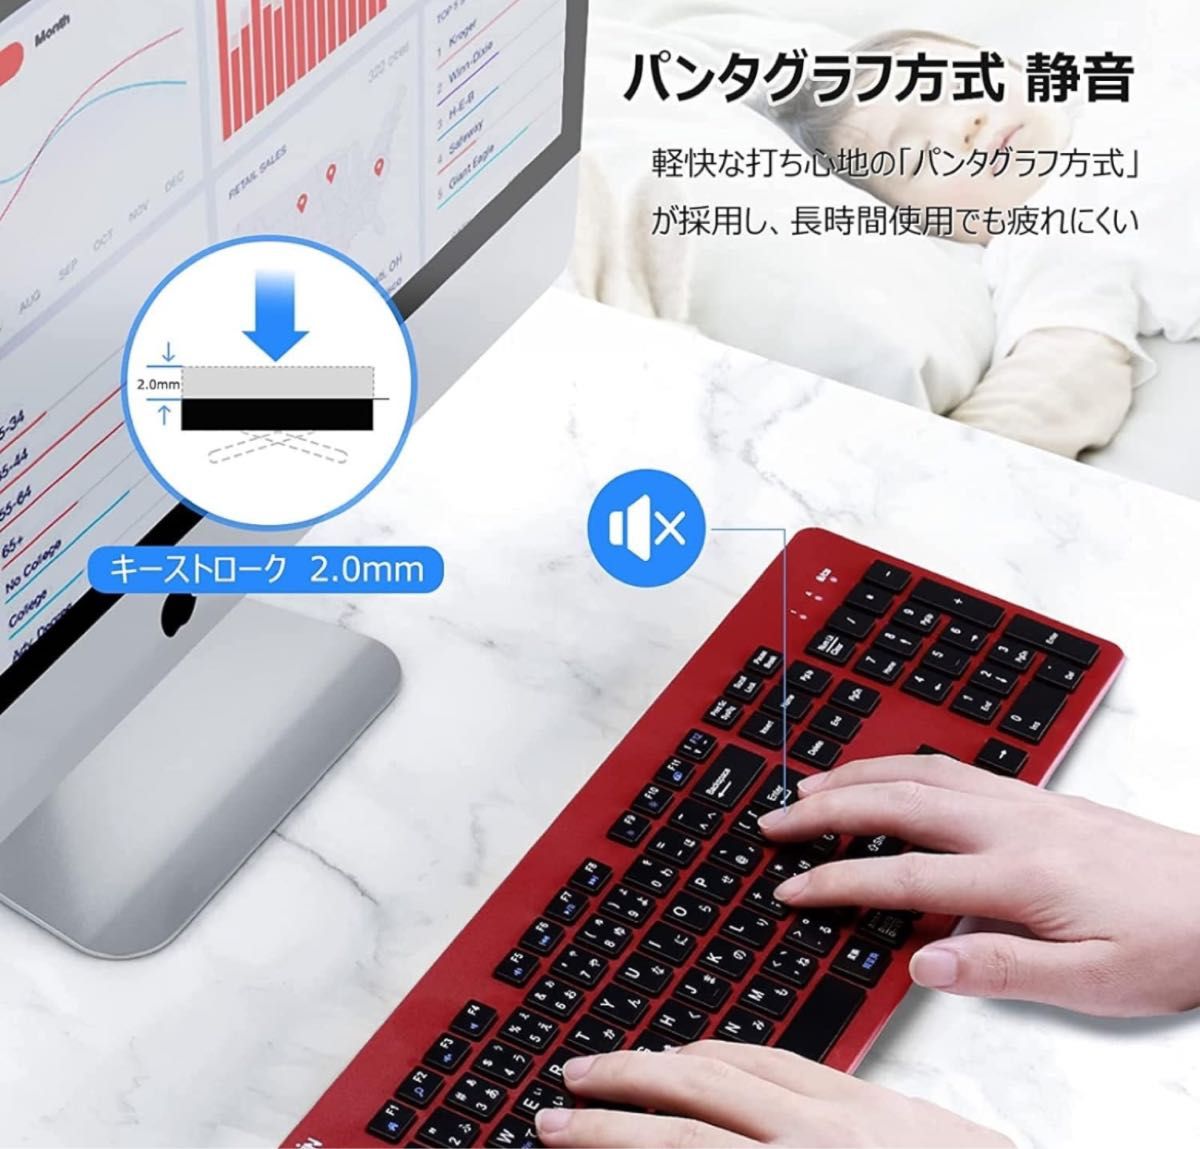 キーボード ワイヤレス 日本語配列 キーボード テンキー付き 無線 2.4G キーボード パソコンPC用 Windows Mac 